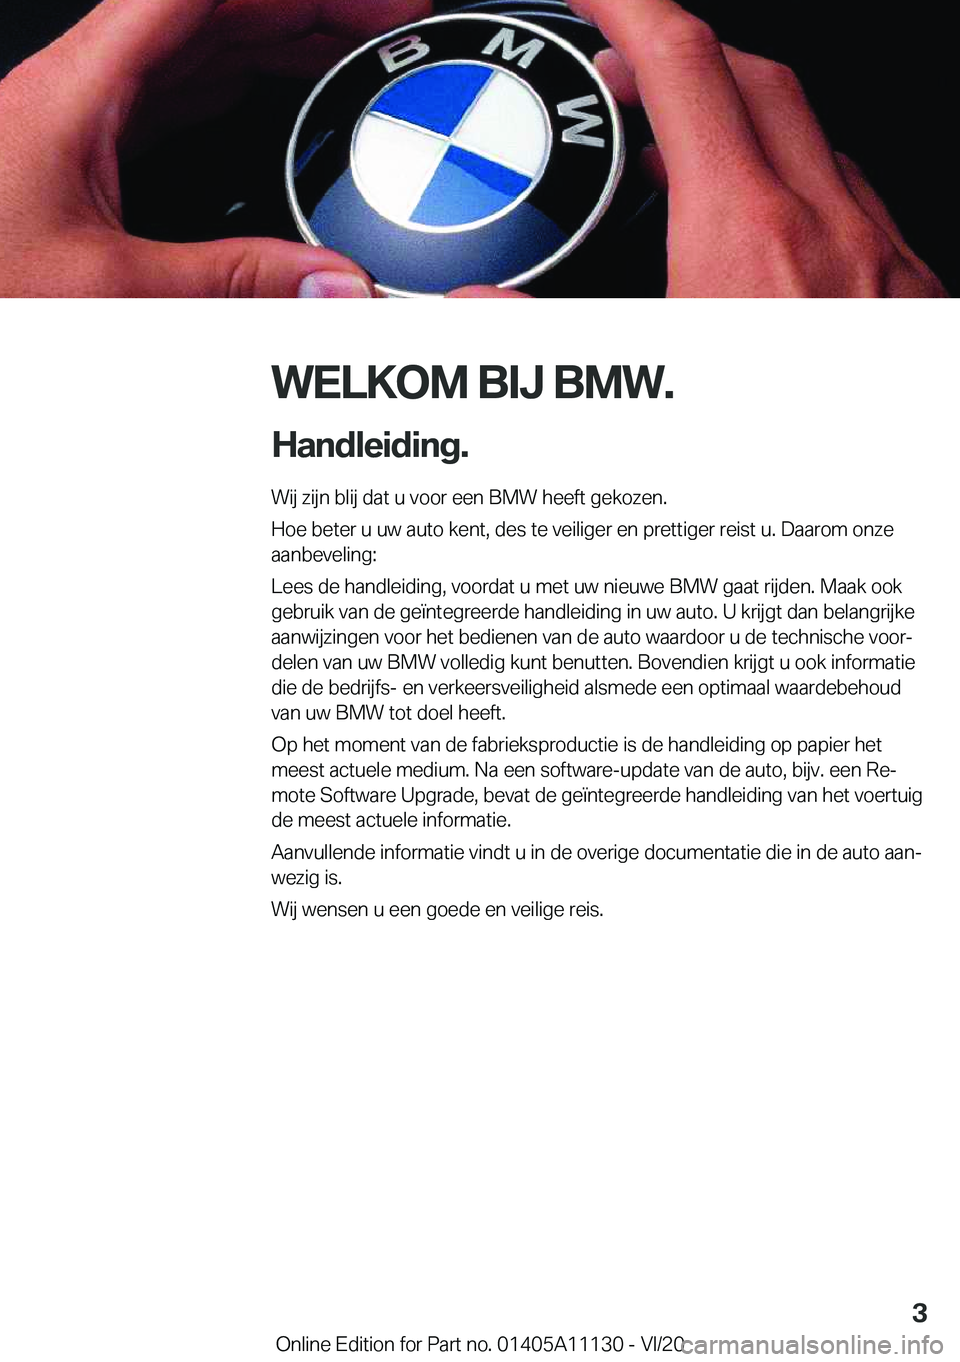 BMW 8 SERIES COUPE 2021  Instructieboekjes (in Dutch) �W�E�L�K�O�M��B�I�J��B�M�W�.
�H�a�n�d�l�e�i�d�i�n�g�. �W�i�j��z�i�j�n��b�l�i�j��d�a�t��u��v�o�o�r��e�e�n��B�M�W��h�e�e�f�t��g�e�k�o�z�e�n�.
�H�o�e��b�e�t�e�r��u��u�w��a�u�t�o��k�e�n�t�